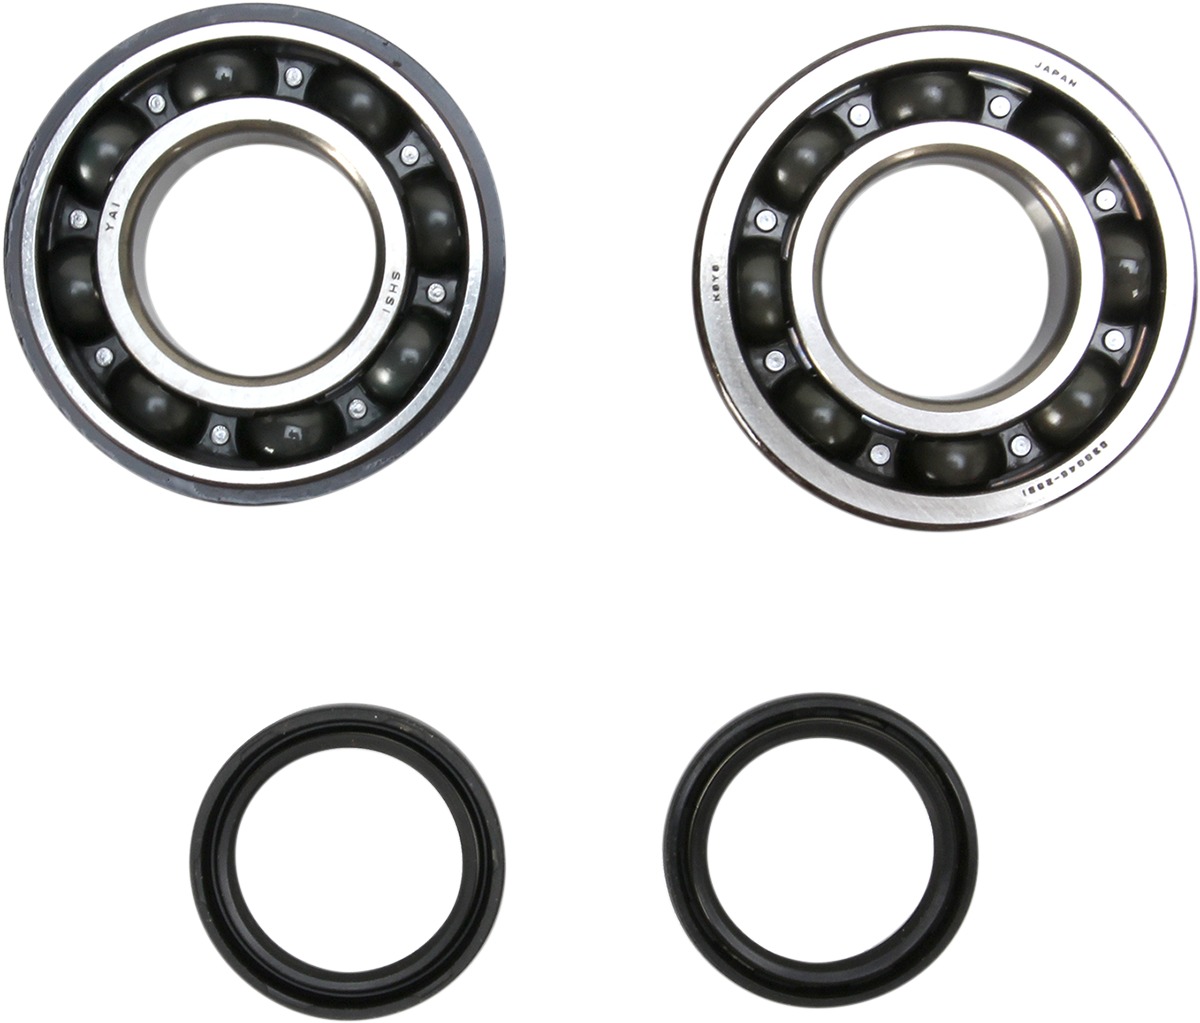 Crankshaft Bearing & Seal Kit - For 10-17 Suzuki RMZ250 - Click Image to Close